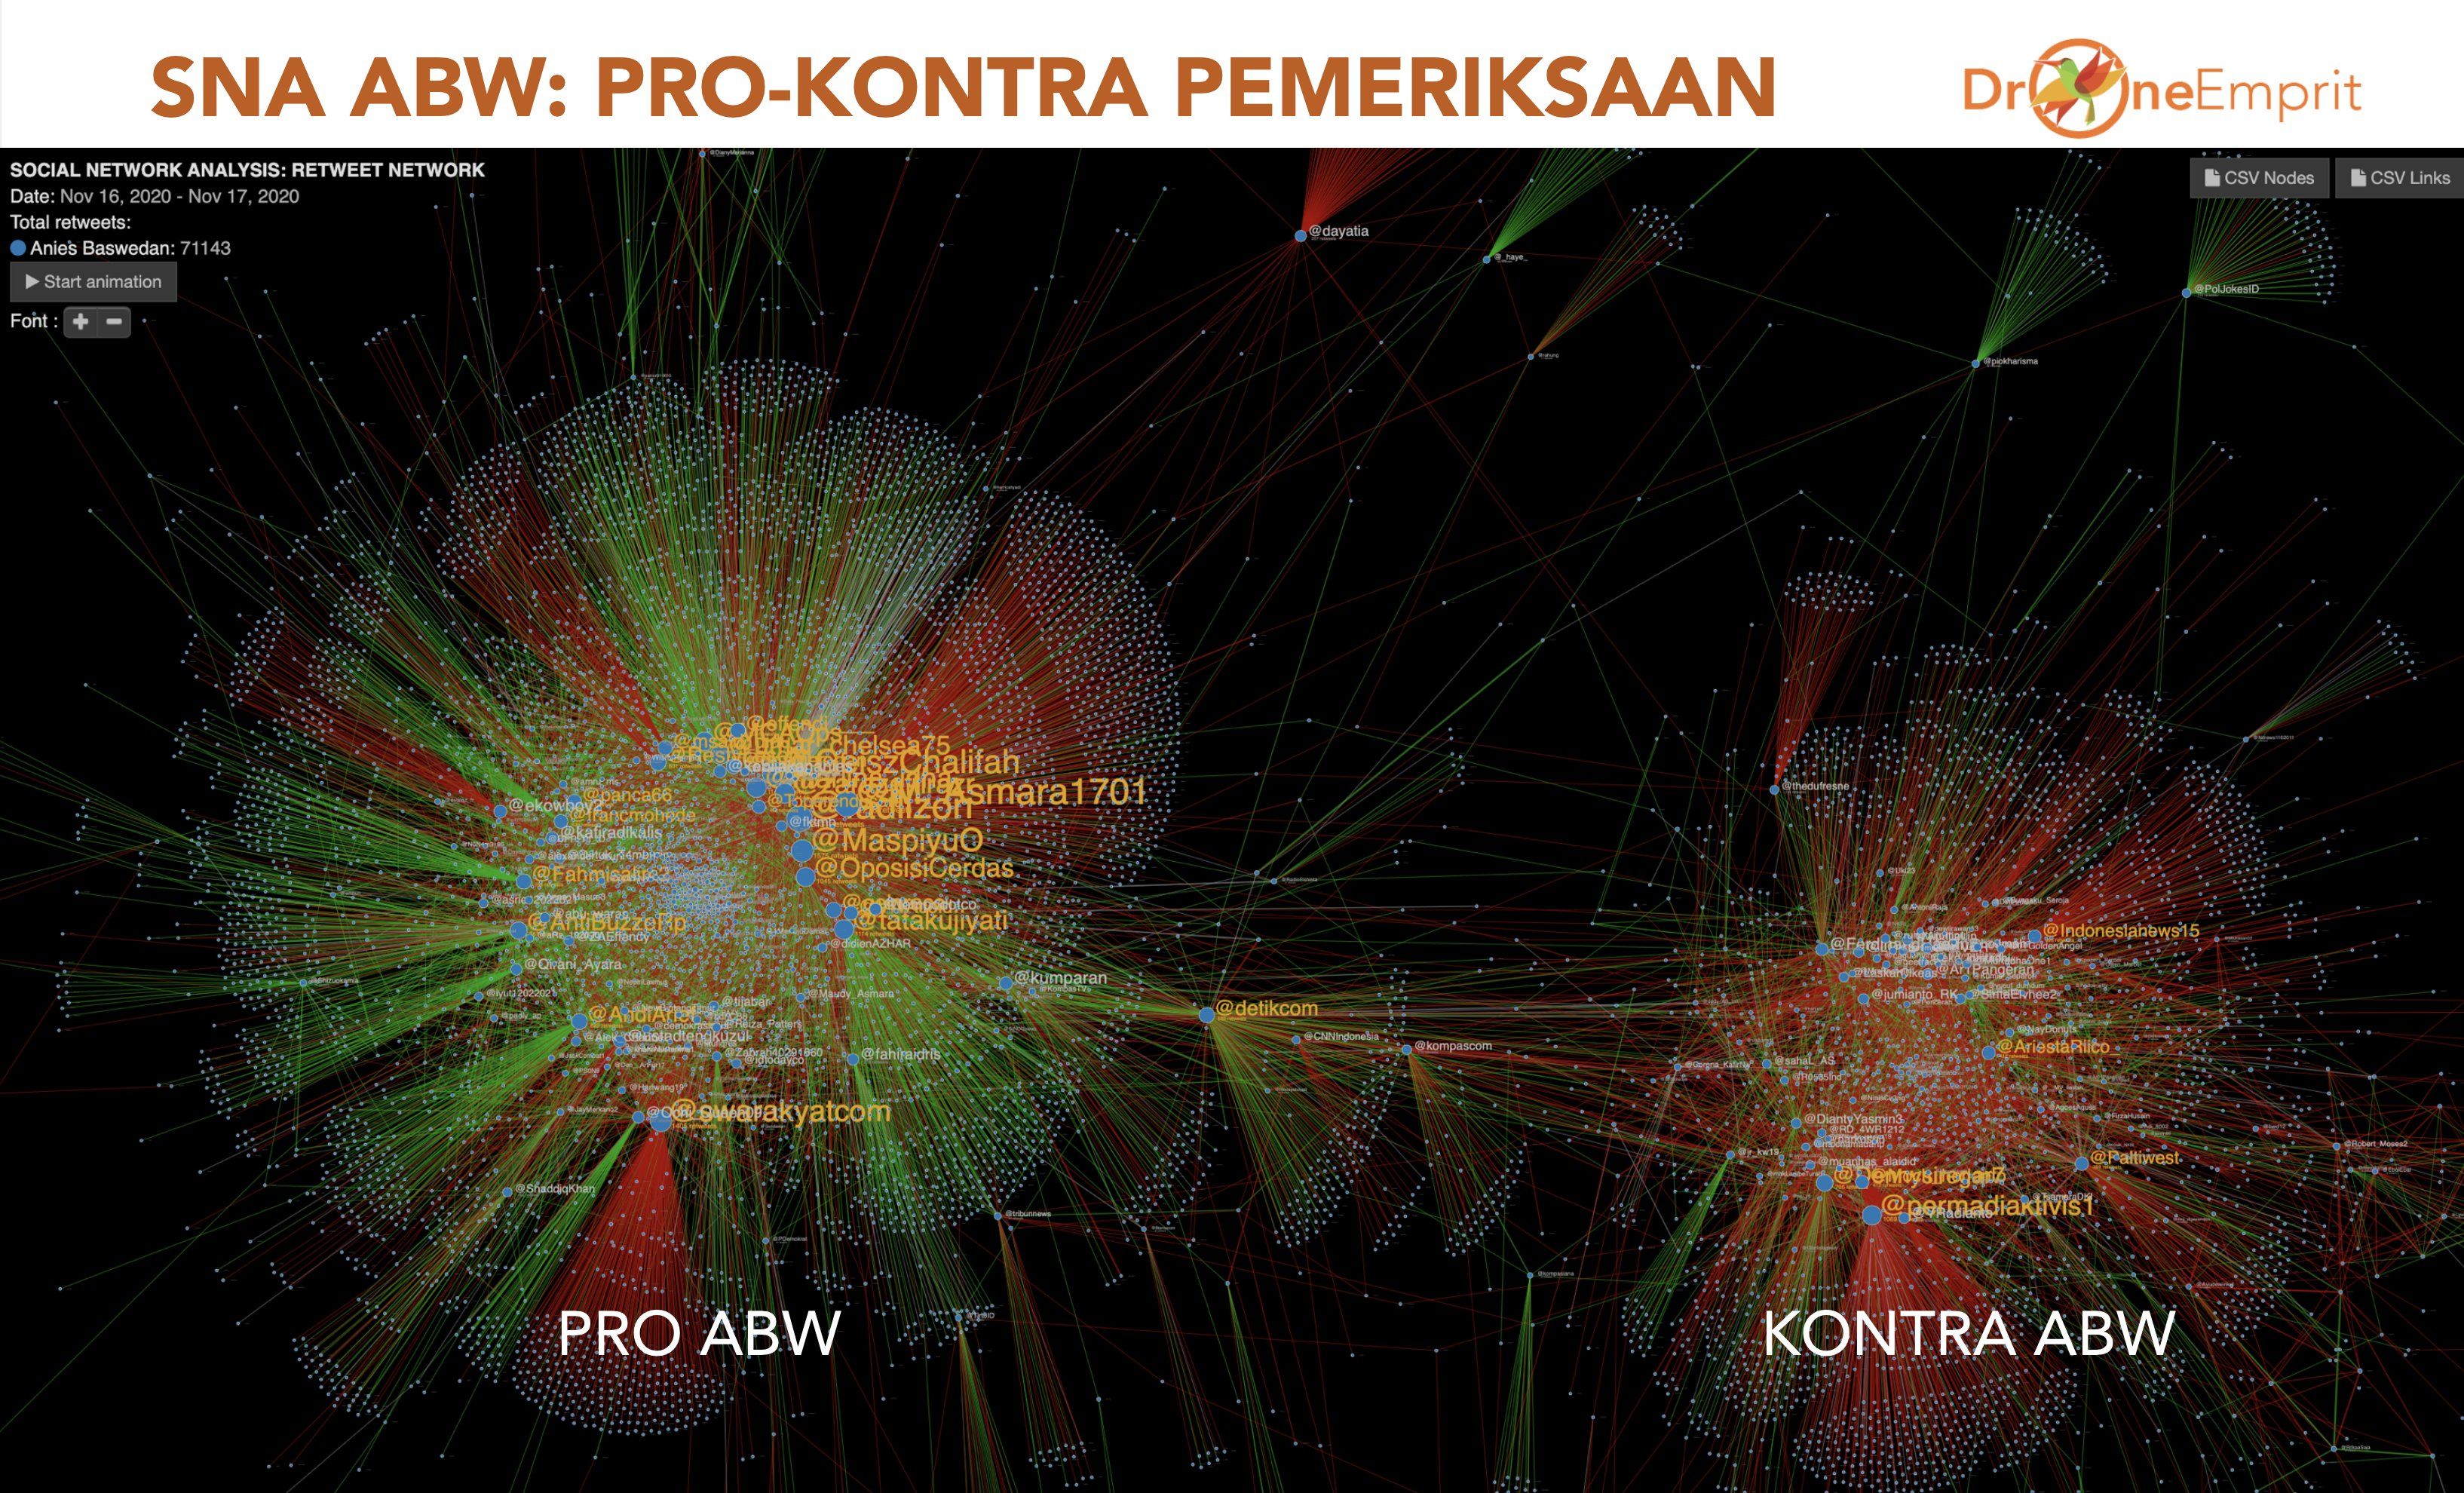 Peta percakapan tentang pemeriksaan Anies Baswedan oleh Polda Metro Jaya di media sosial